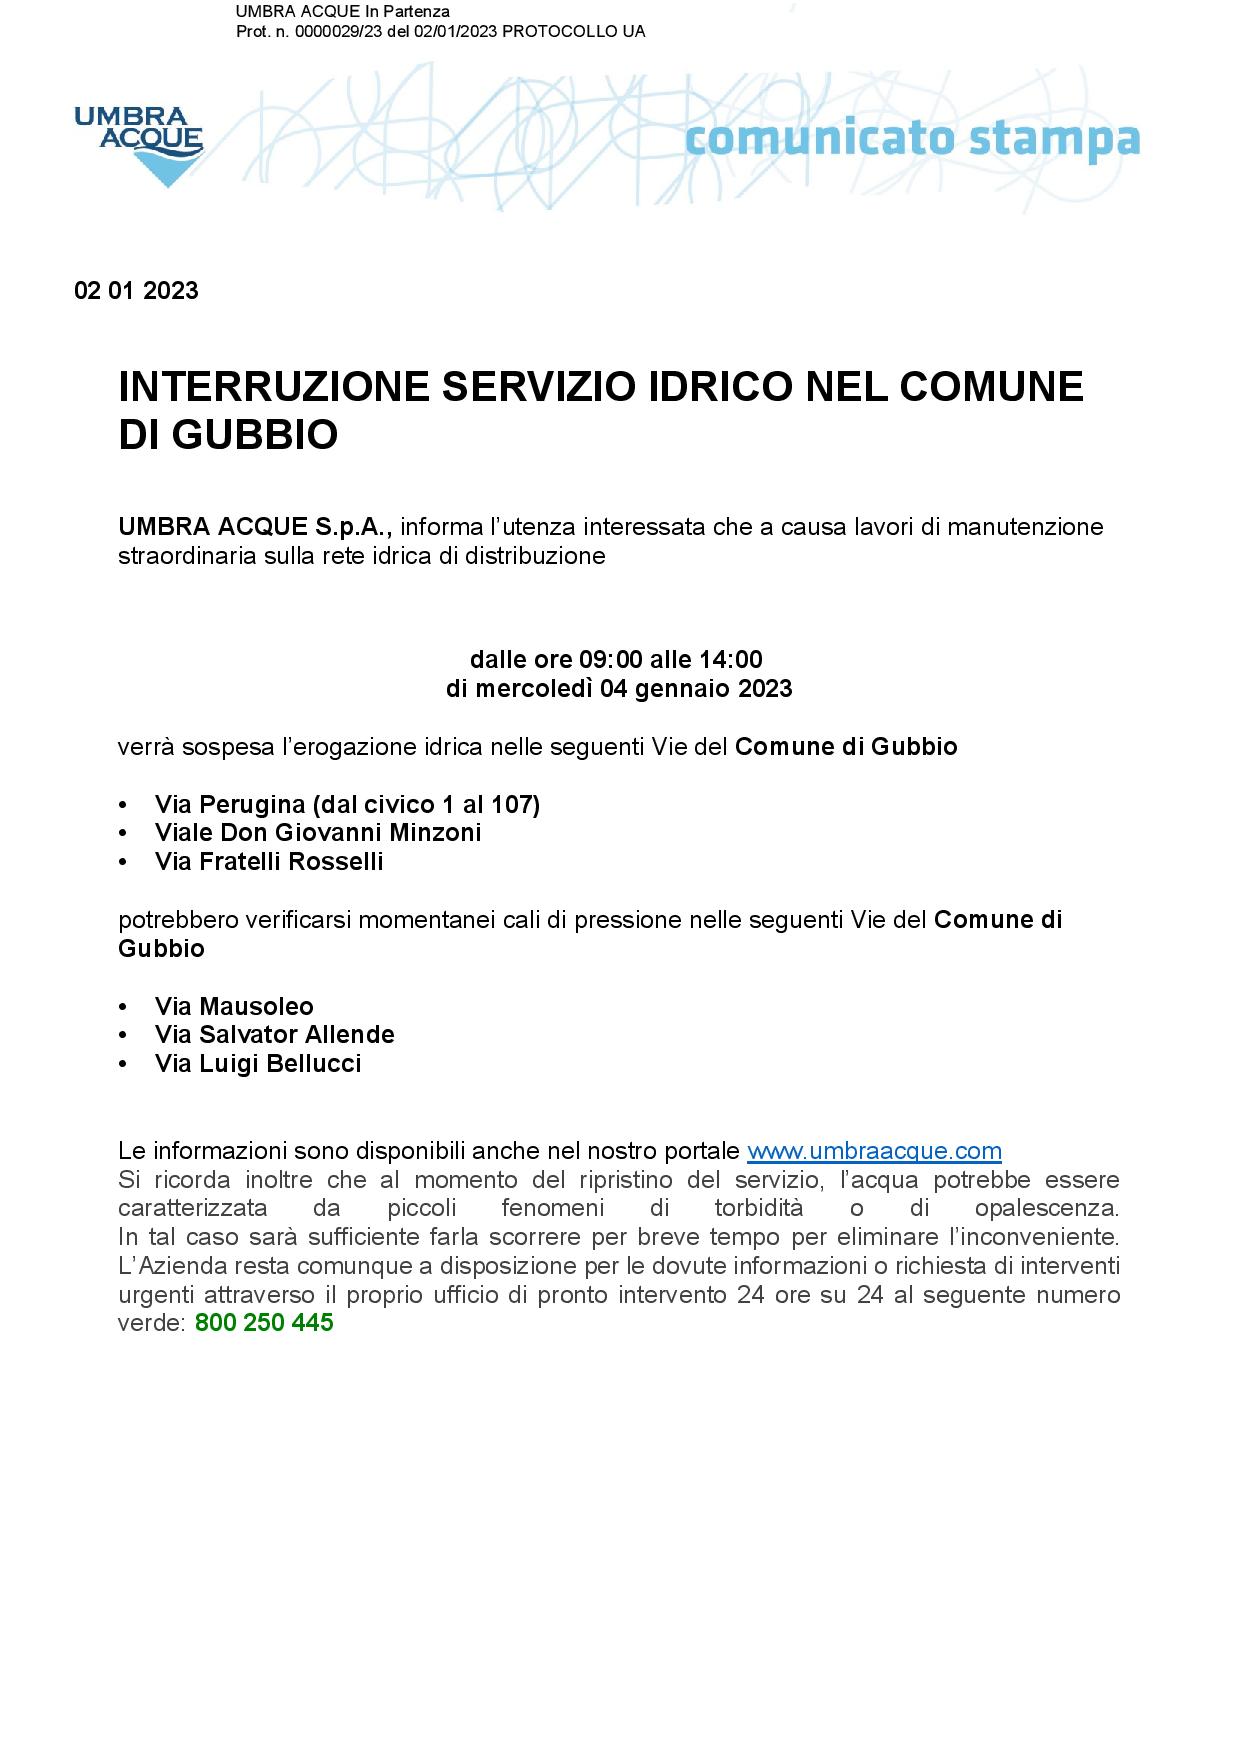 1-INTERRUZIONE-SERVIZIO-IDRICO-COMUNE-DI-GUBBIO-04-GENNAIO-page-001 2110